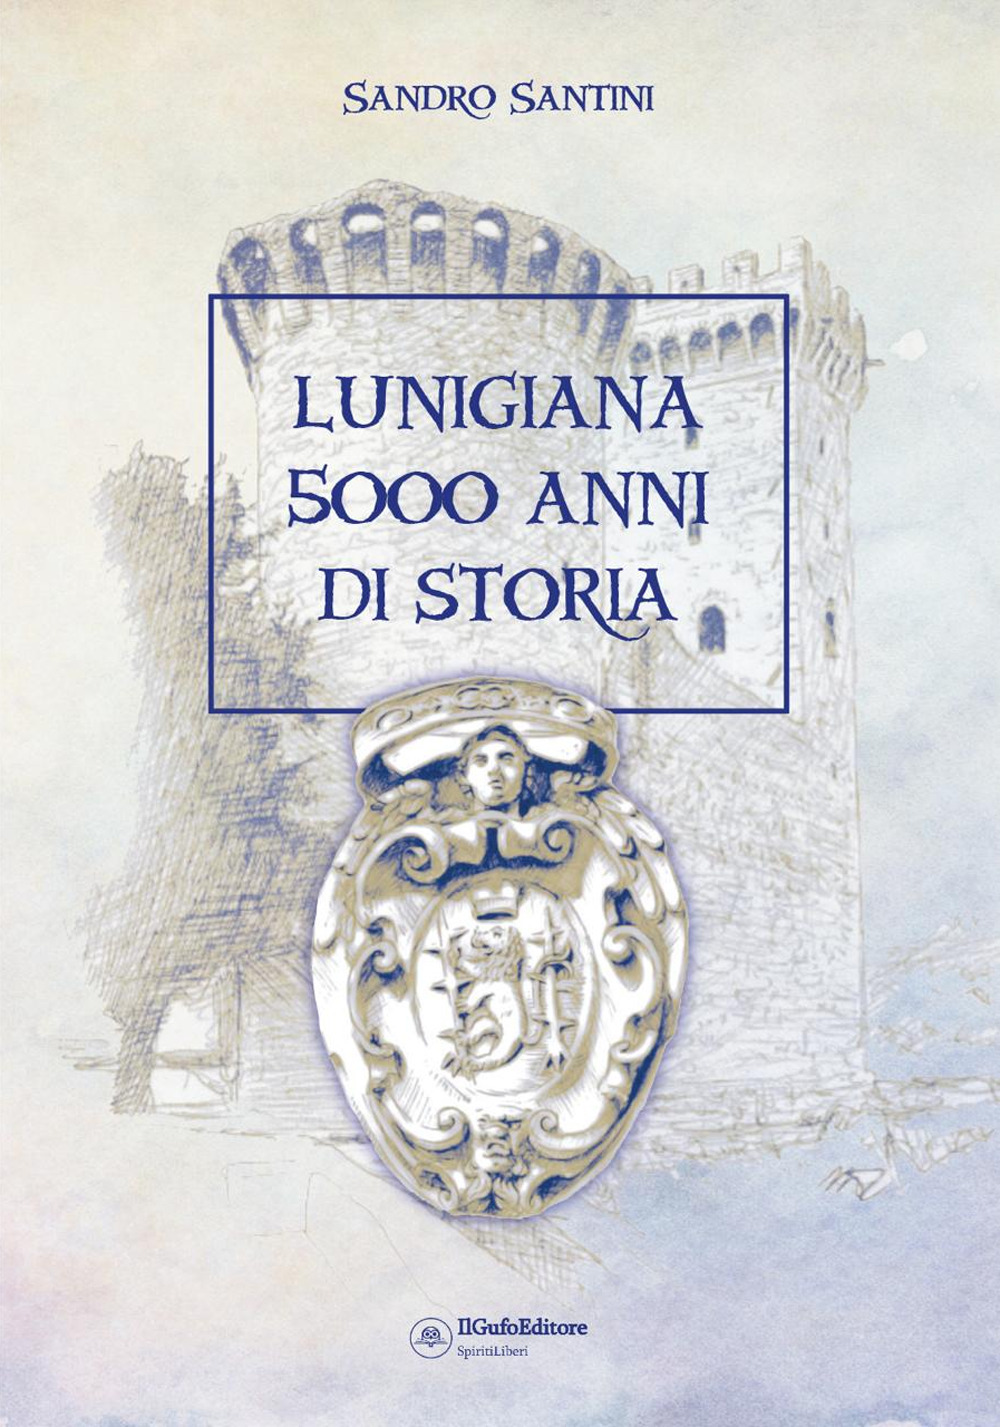 Lunigiana 5000 anni di storia